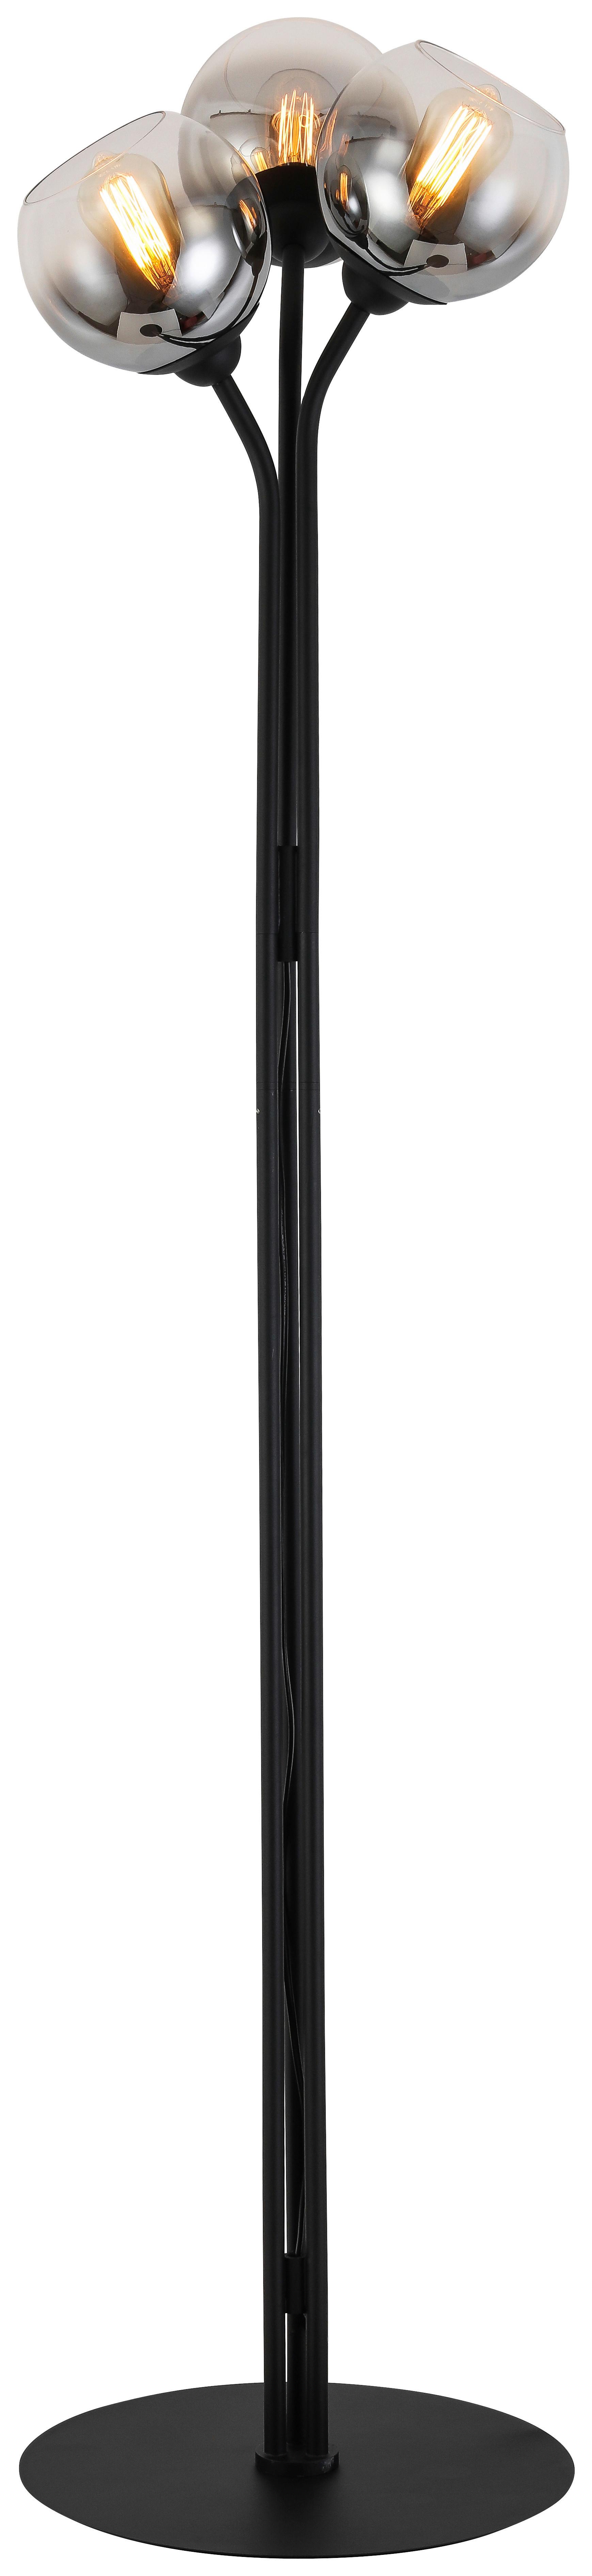 Stehleuchte Kian max. 25 Watt - Chromfarben/Schwarz, Modern, Glas/Metall (42/165cm) - Visiona